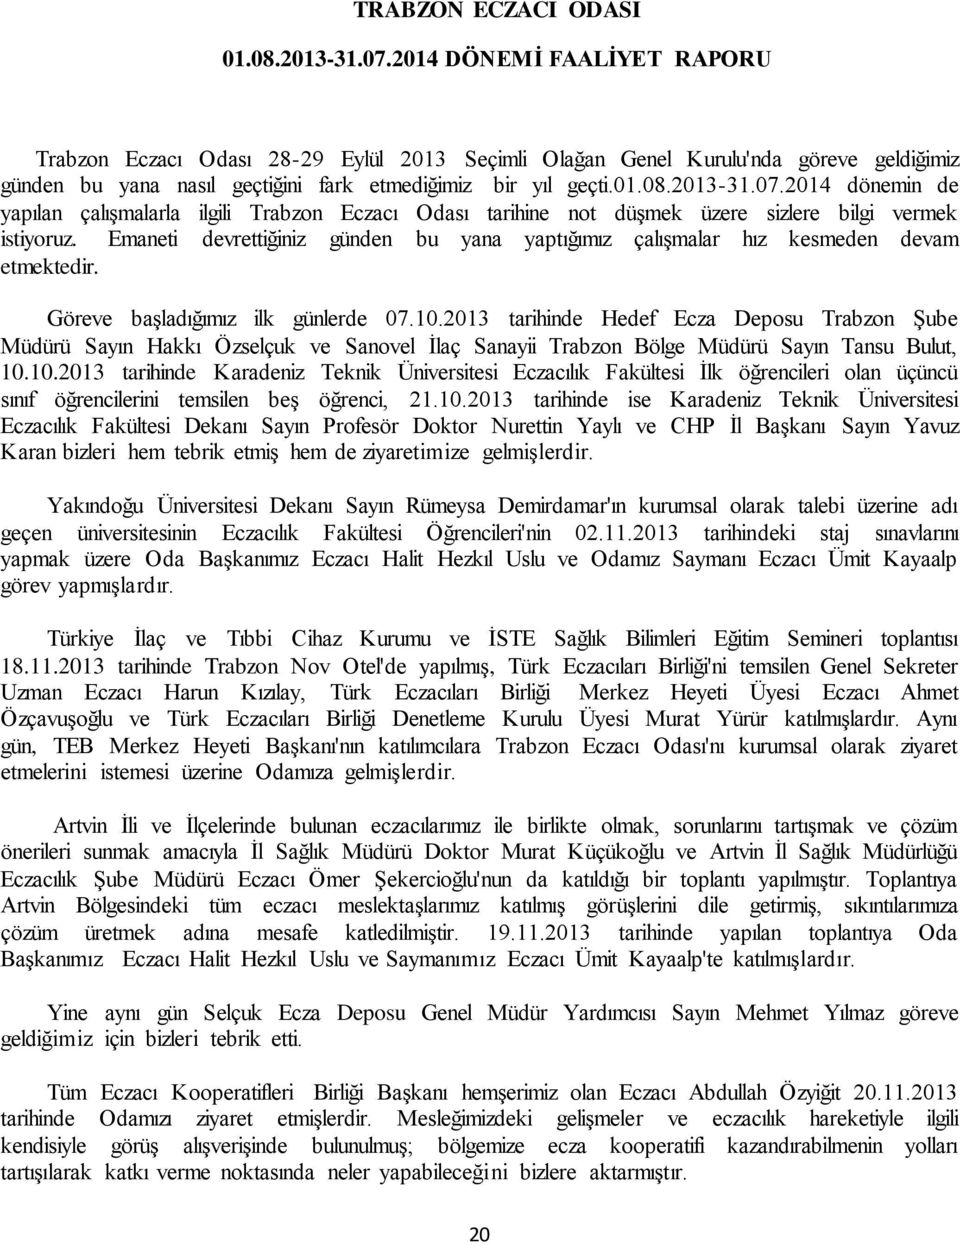 2014 dönemin de yapılan çalışmalarla ilgili Trabzon Eczacı Odası tarihine not düşmek üzere sizlere bilgi vermek istiyoruz.